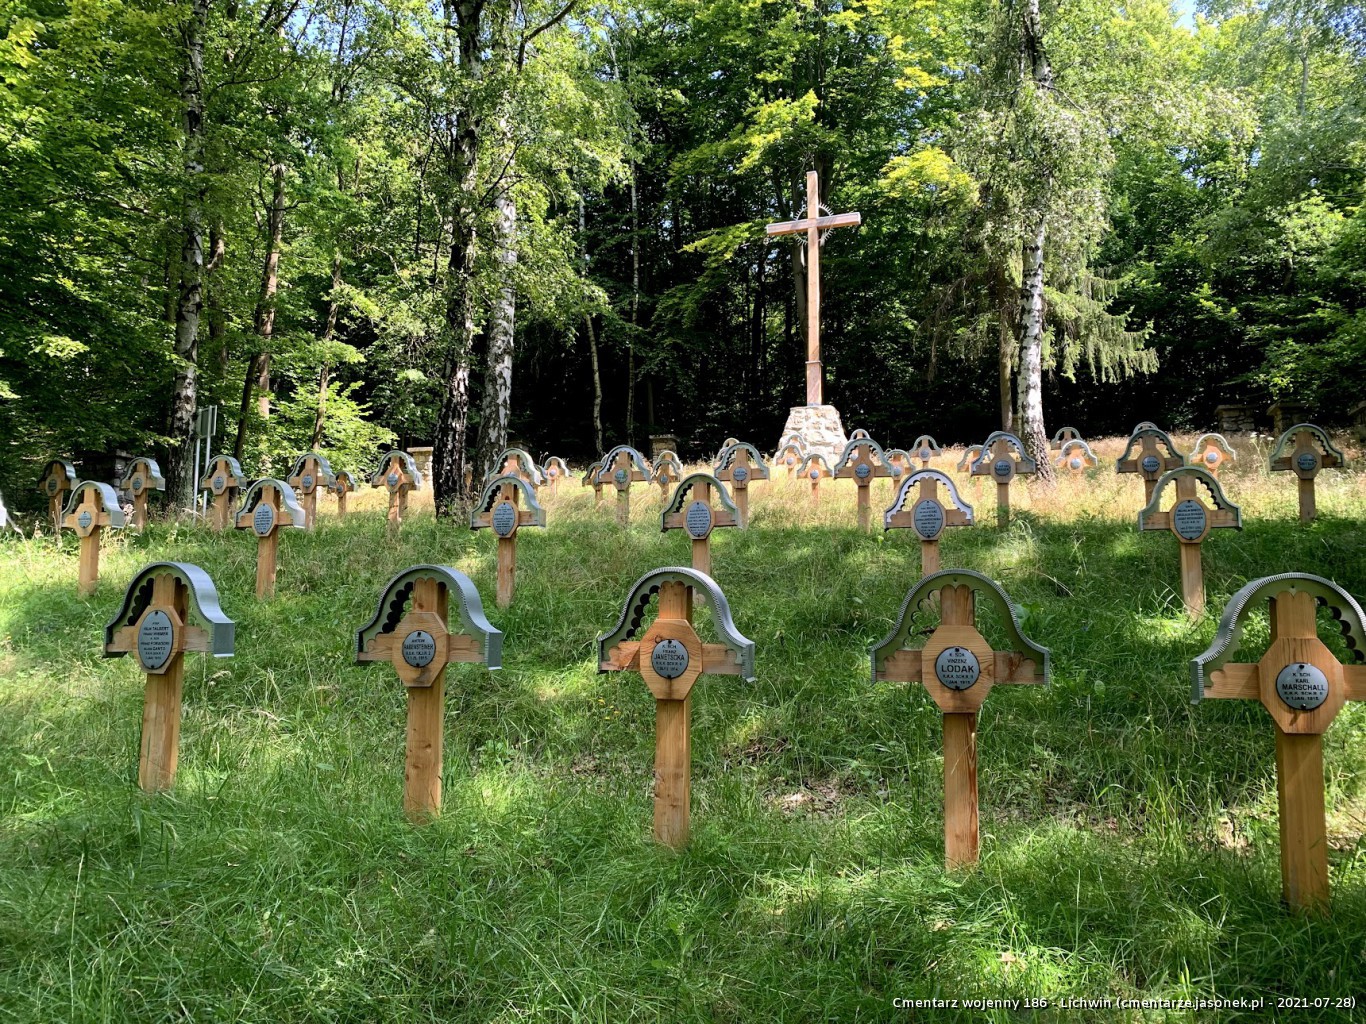 Cmentarz wojenny 186 - Lichwin